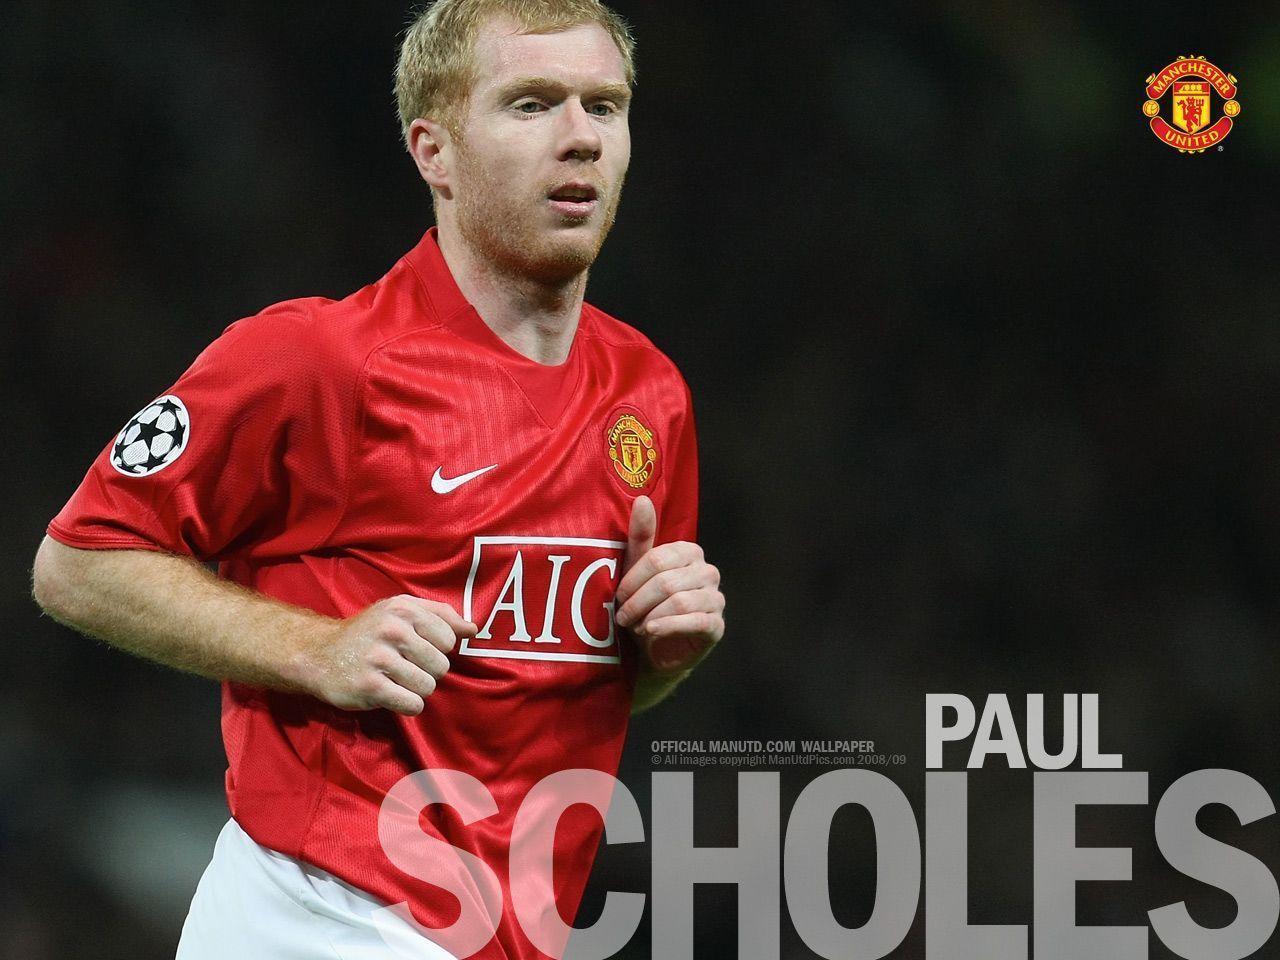 paul scholes football legend, Manchester United Legend wallpaper